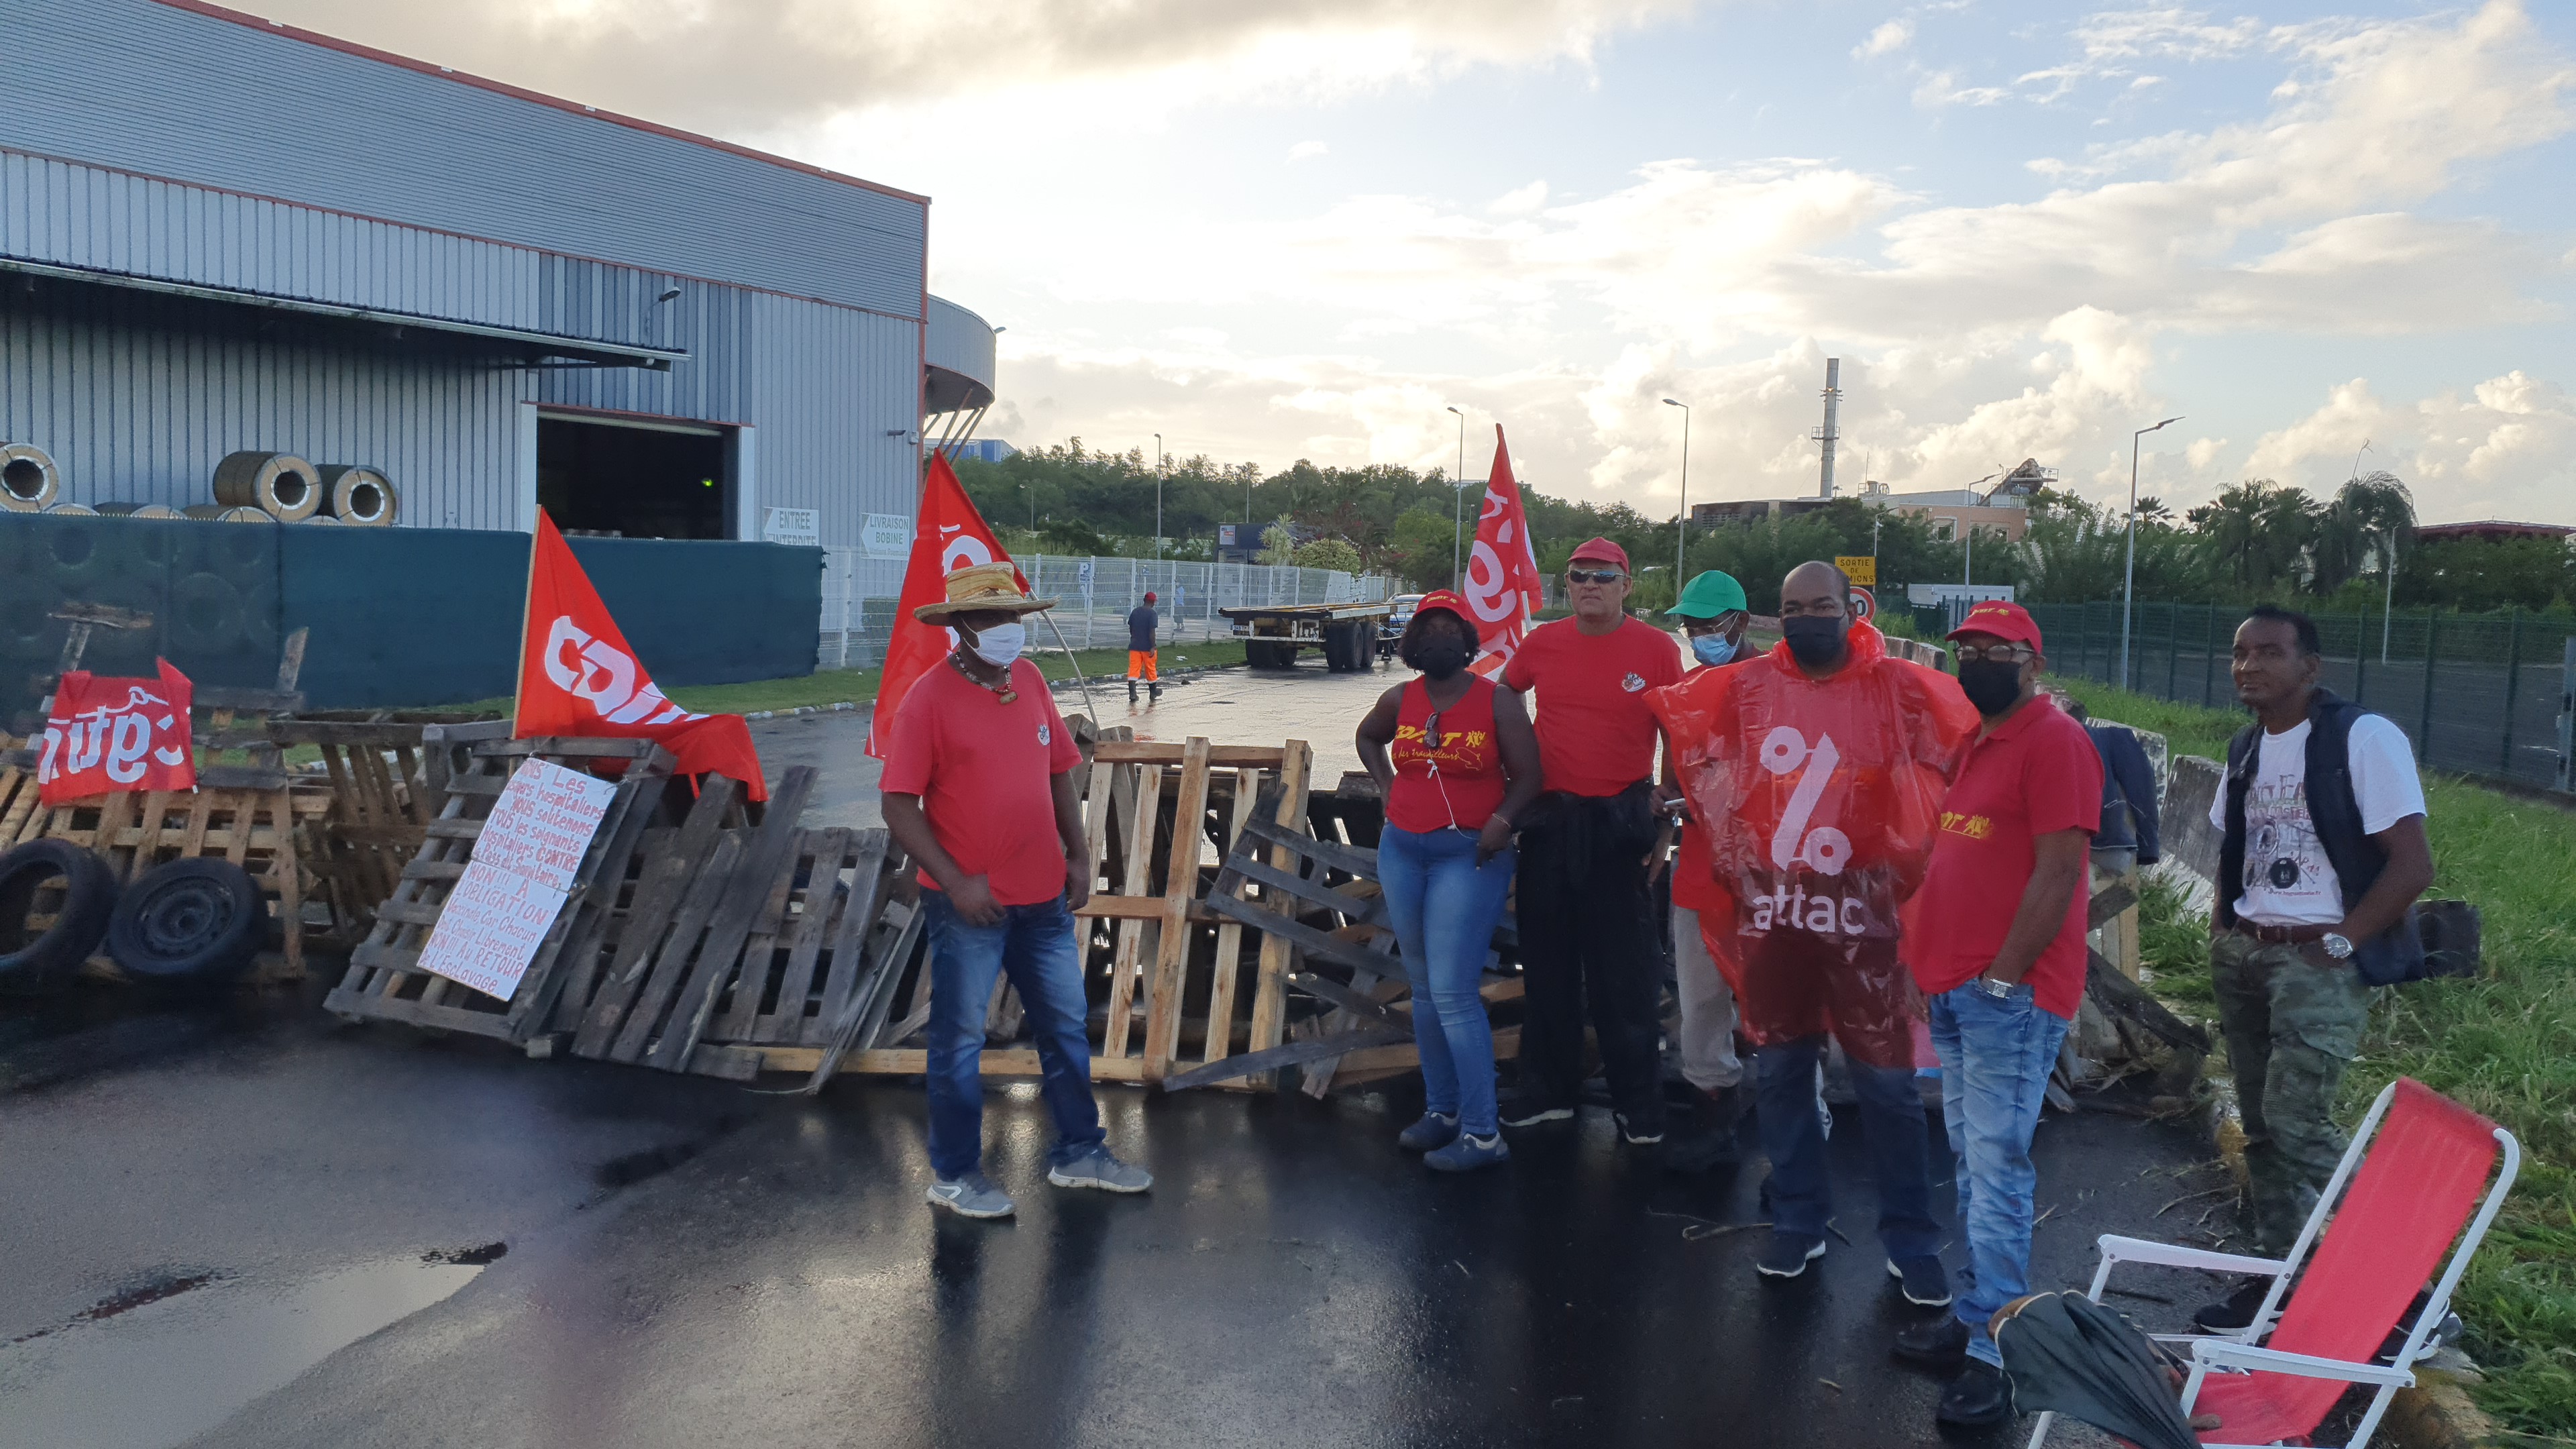     Grève générale : les accès du port bloqués 

